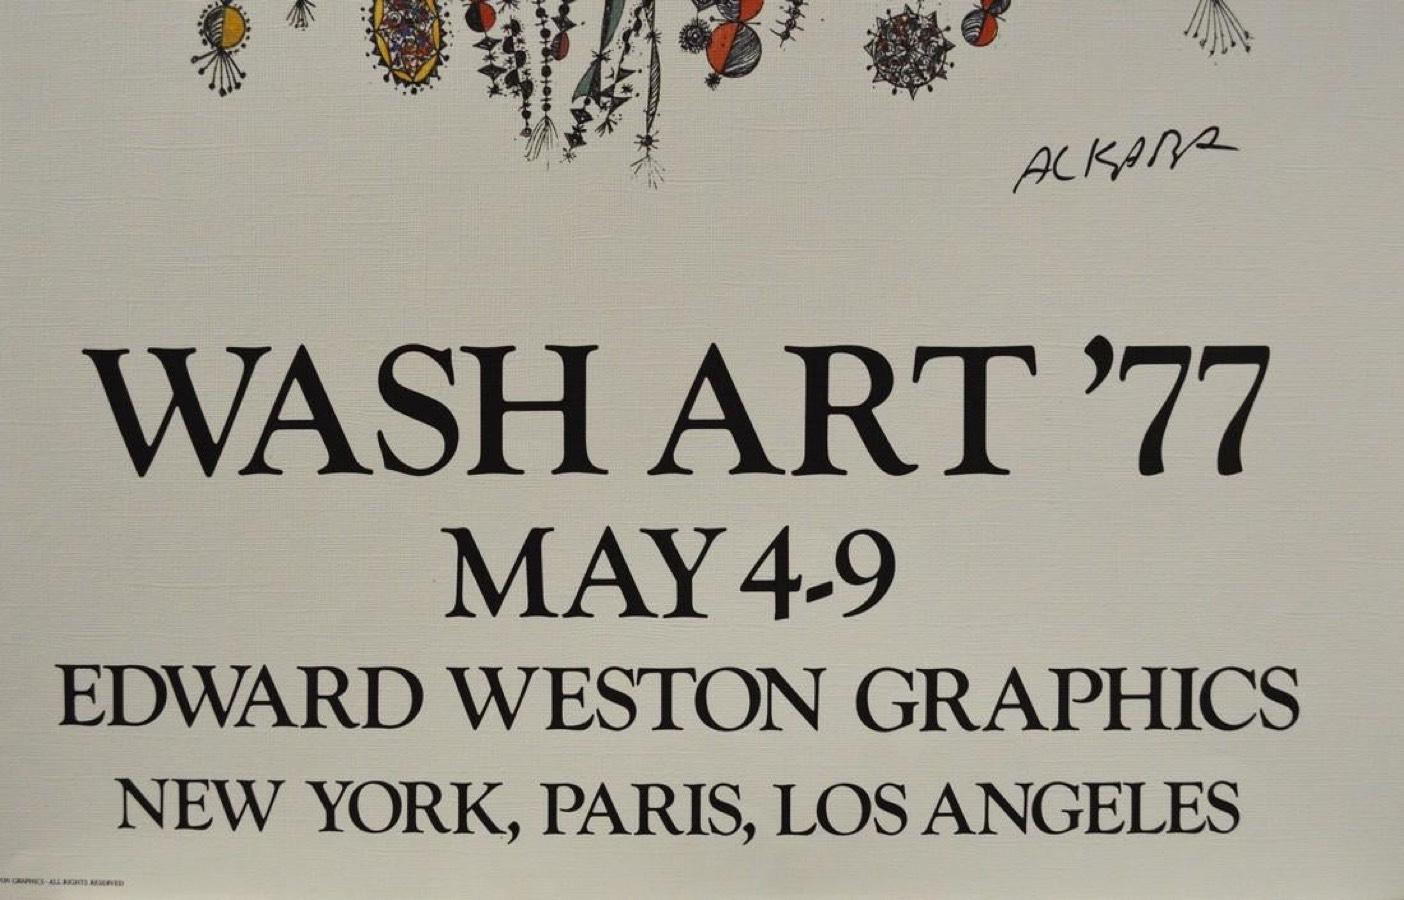 Wash Art ’77, May 4-9-Poster - Print by Ovadia Alkara